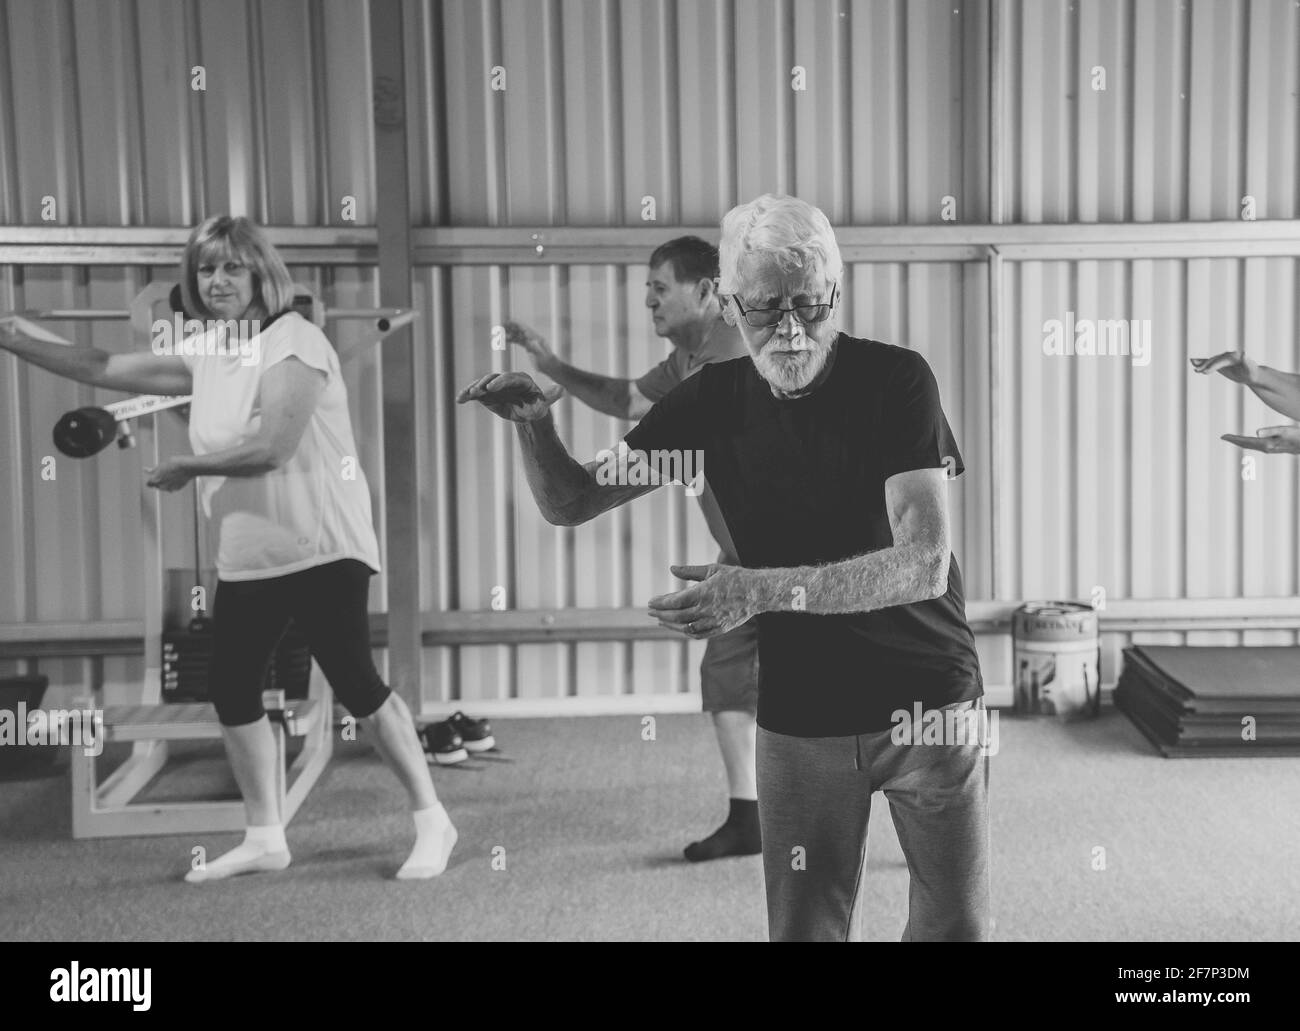 Gruppe von Senioren in Tai Chi Klasse Ausübung in einem aktiven Ruhestand Lebensstil. Psychische und körperliche Gesundheit Vorteile von Bewegung und Fitness bei älteren Menschen Stockfoto